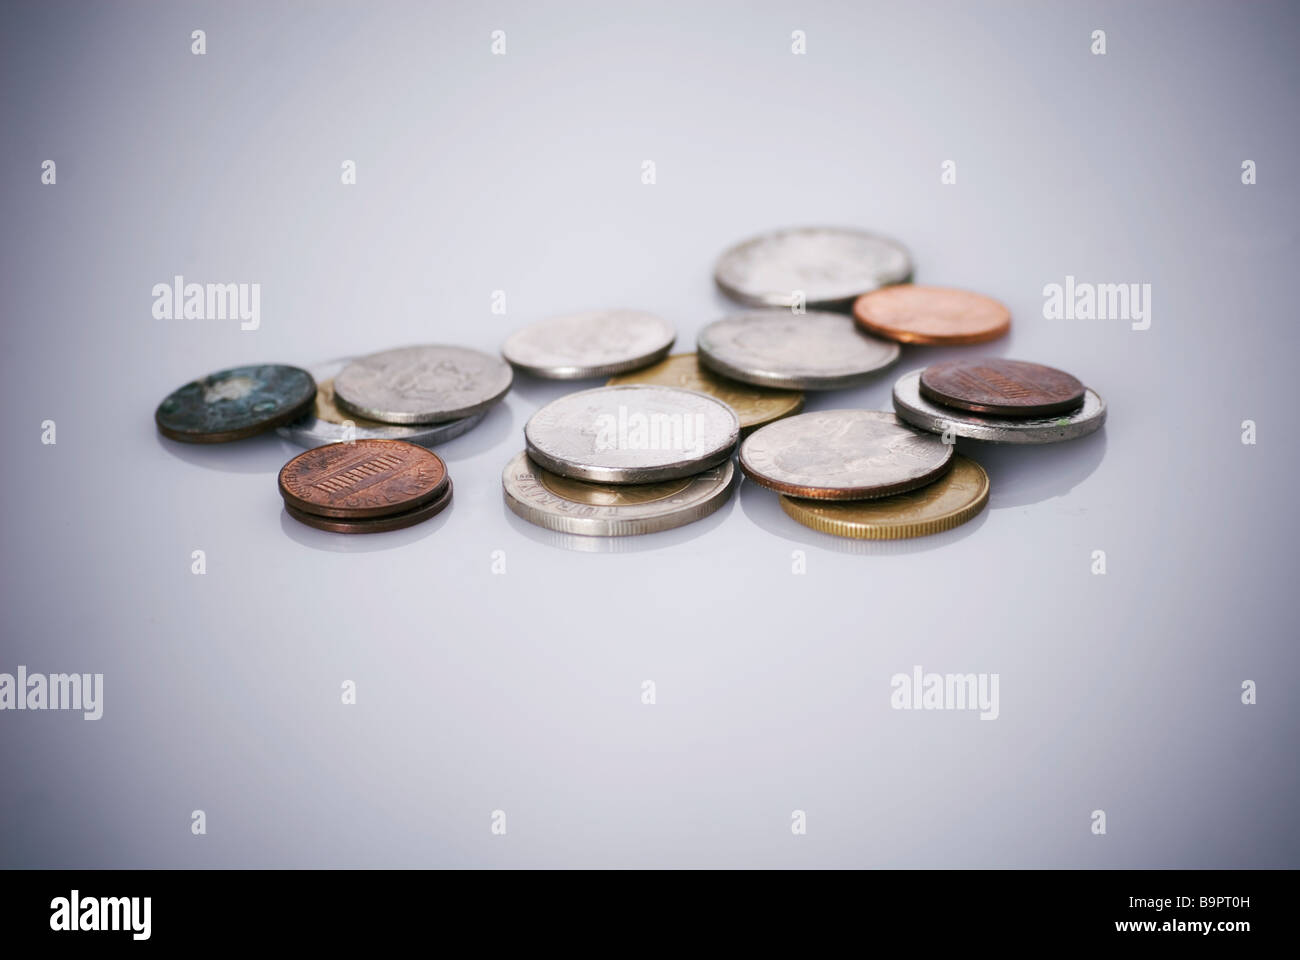 Colección de diferentes monedas de dinero en un fondo blanco. Foto de stock